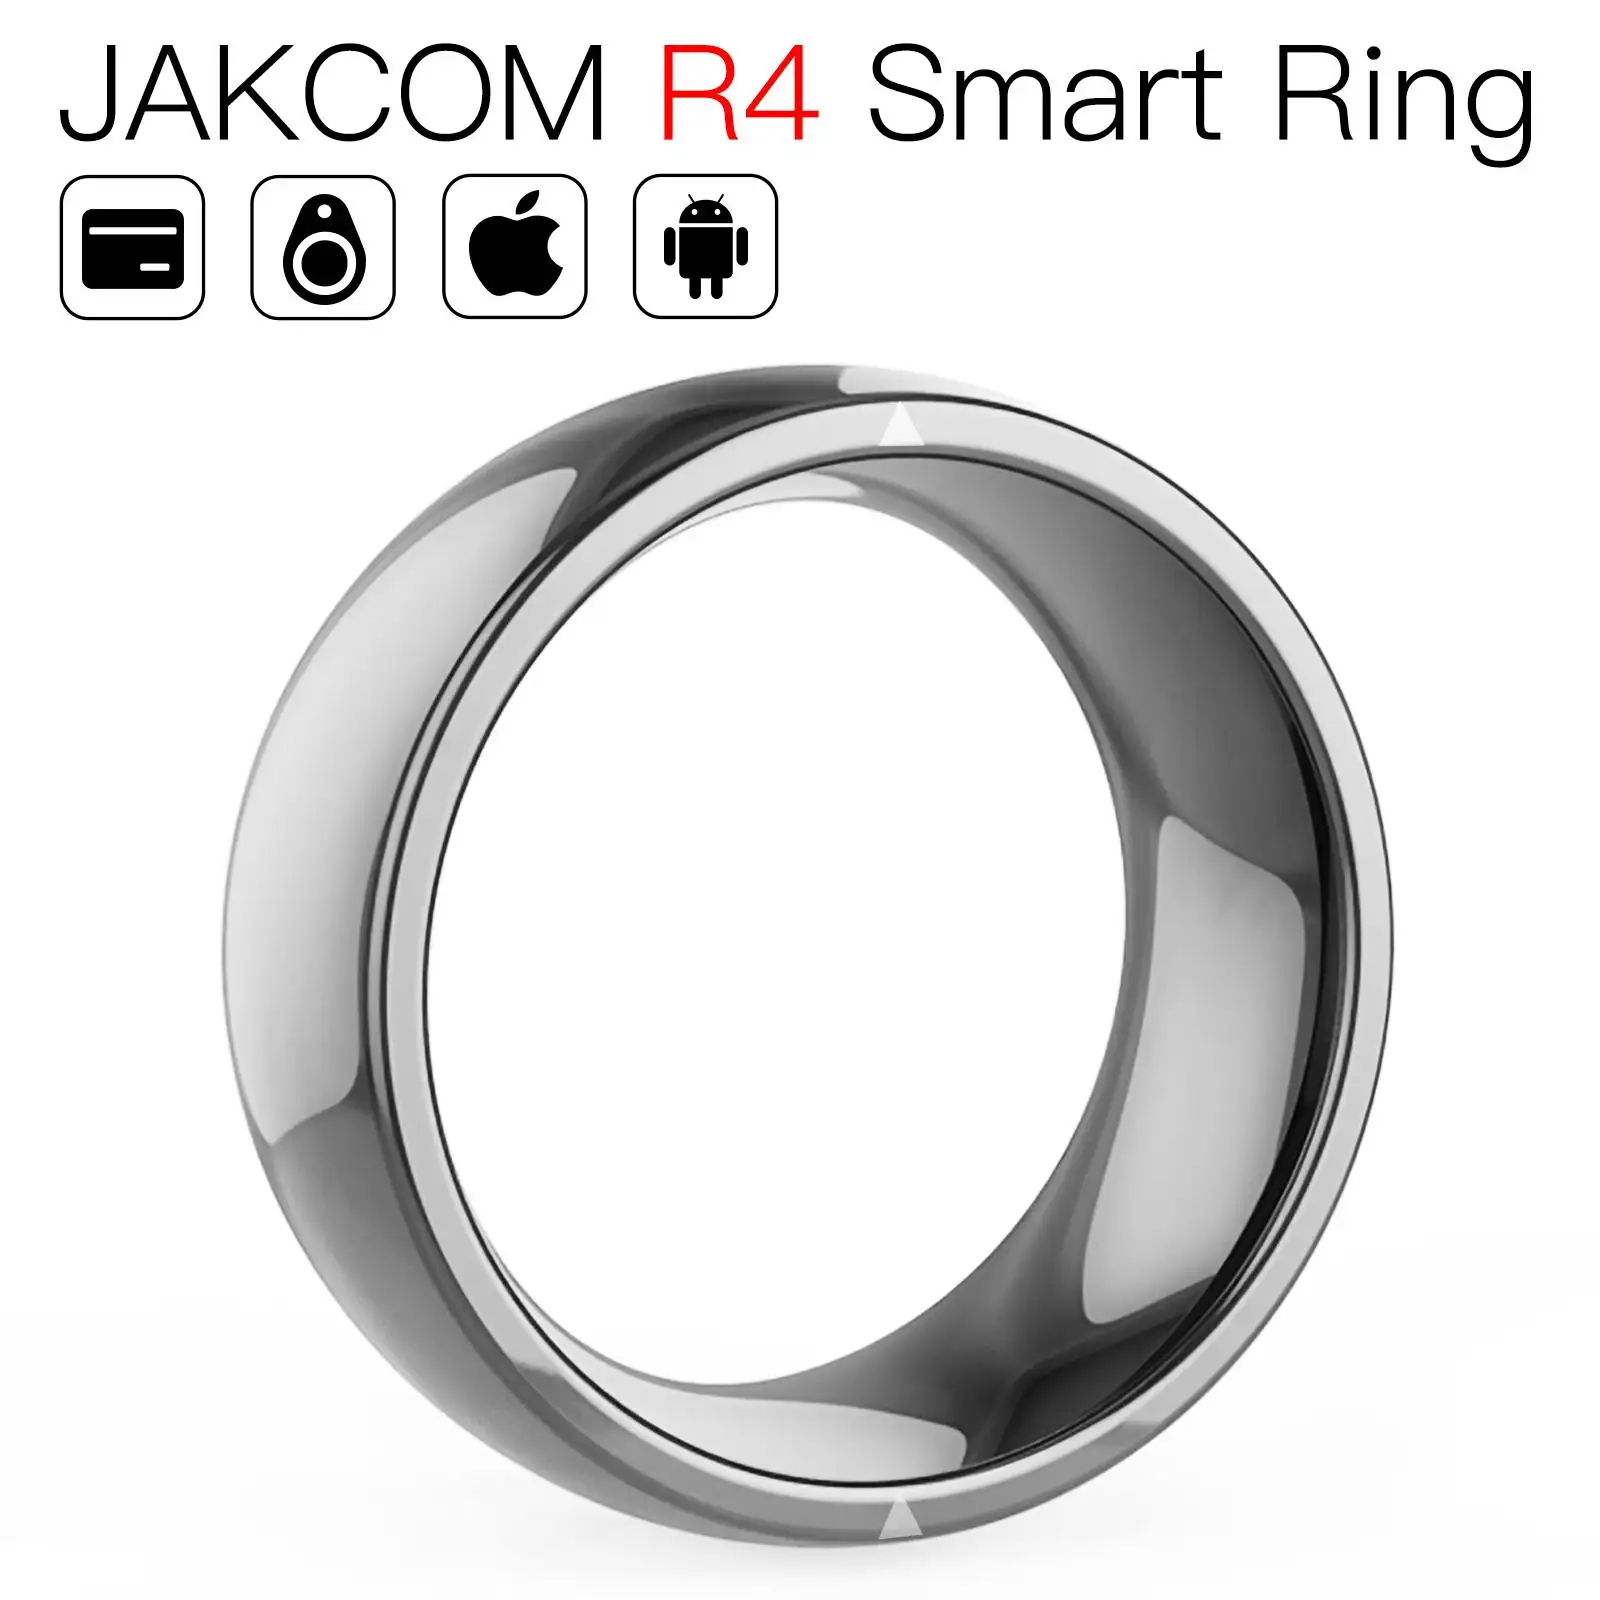 JAKCOM R4สมาร์ทแหวนอิเล็กทรอนิกส์อุปกรณ์เสริมโทรศัพท์มือถือโทรศัพท์มือถือฝรั่งเศสนาฬิกาผู้ชายร้อน